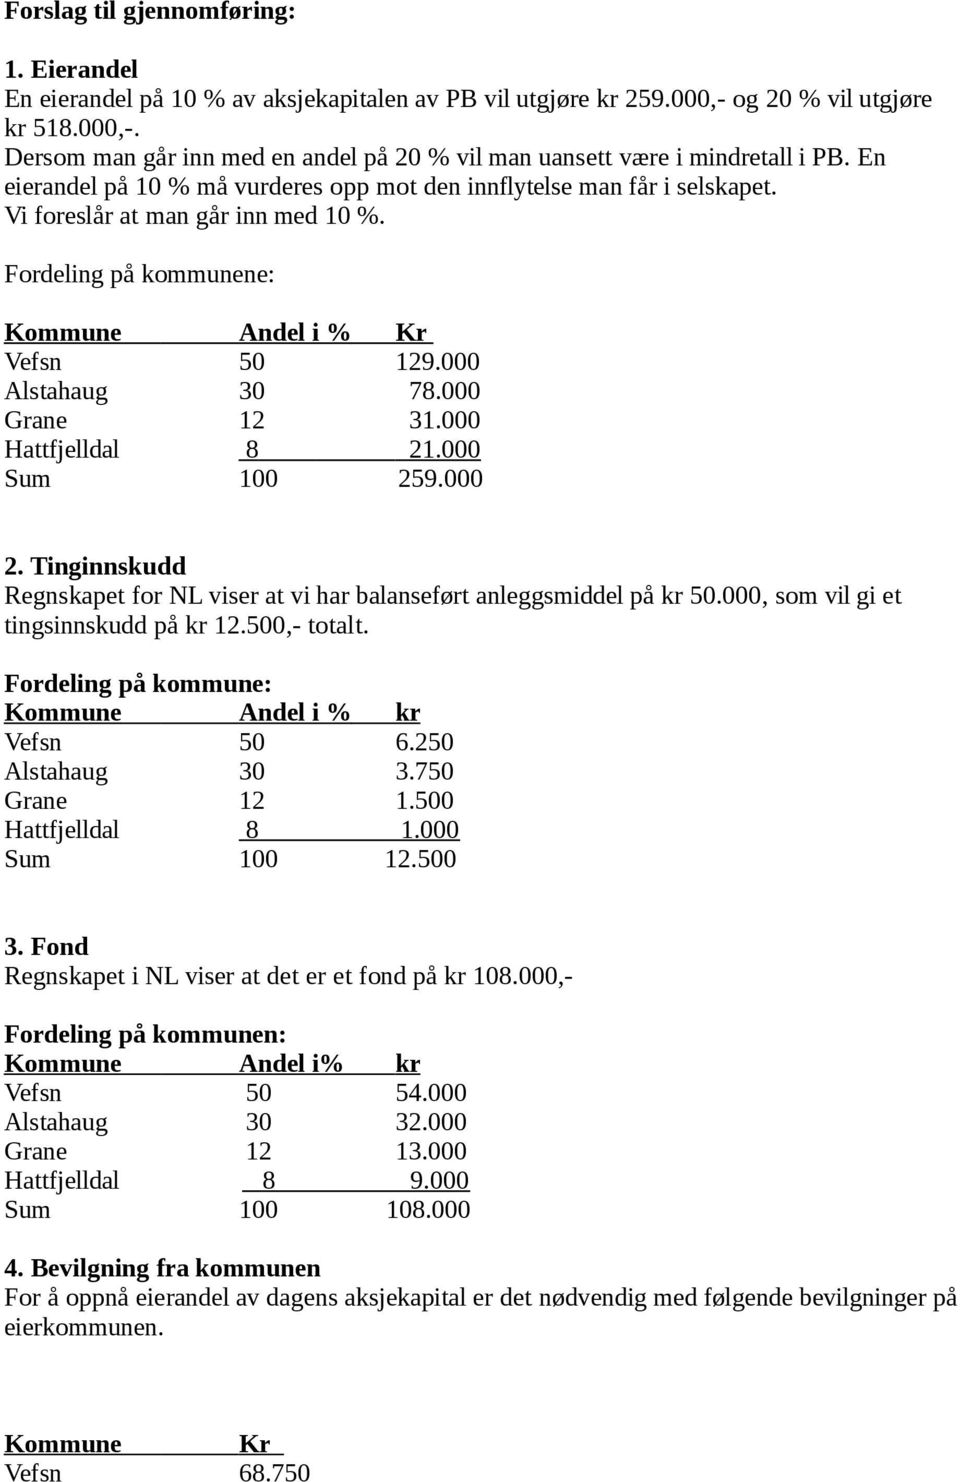 000 Grane 12 31.000 Hattfjelldal 8 21.000 Sum 100 259.000 2. Tinginnskudd Regnskapet for NL viser at vi har balanseført anleggsmiddel på kr 50.000, som vil gi et tingsinnskudd på kr 12.500,- totalt.